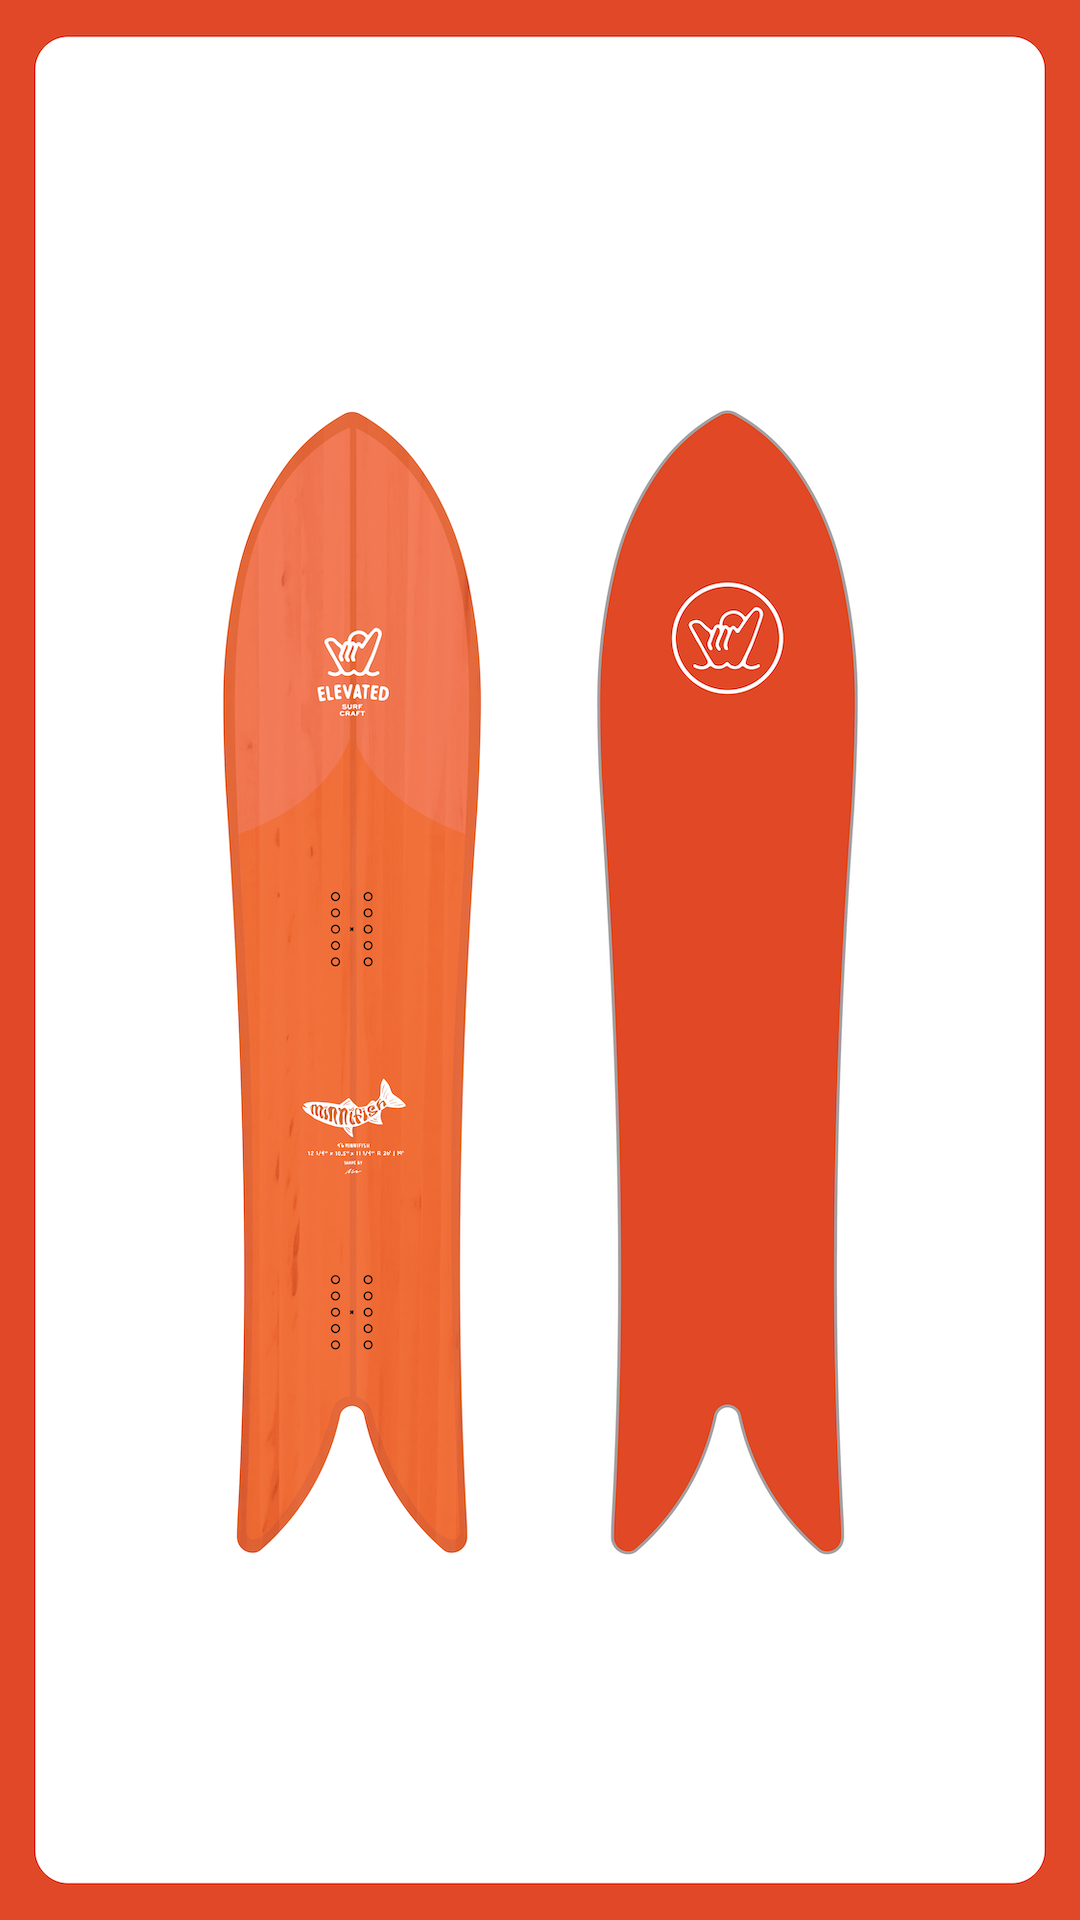 21,070円elevated surfcraft mini fishパウダーパーク